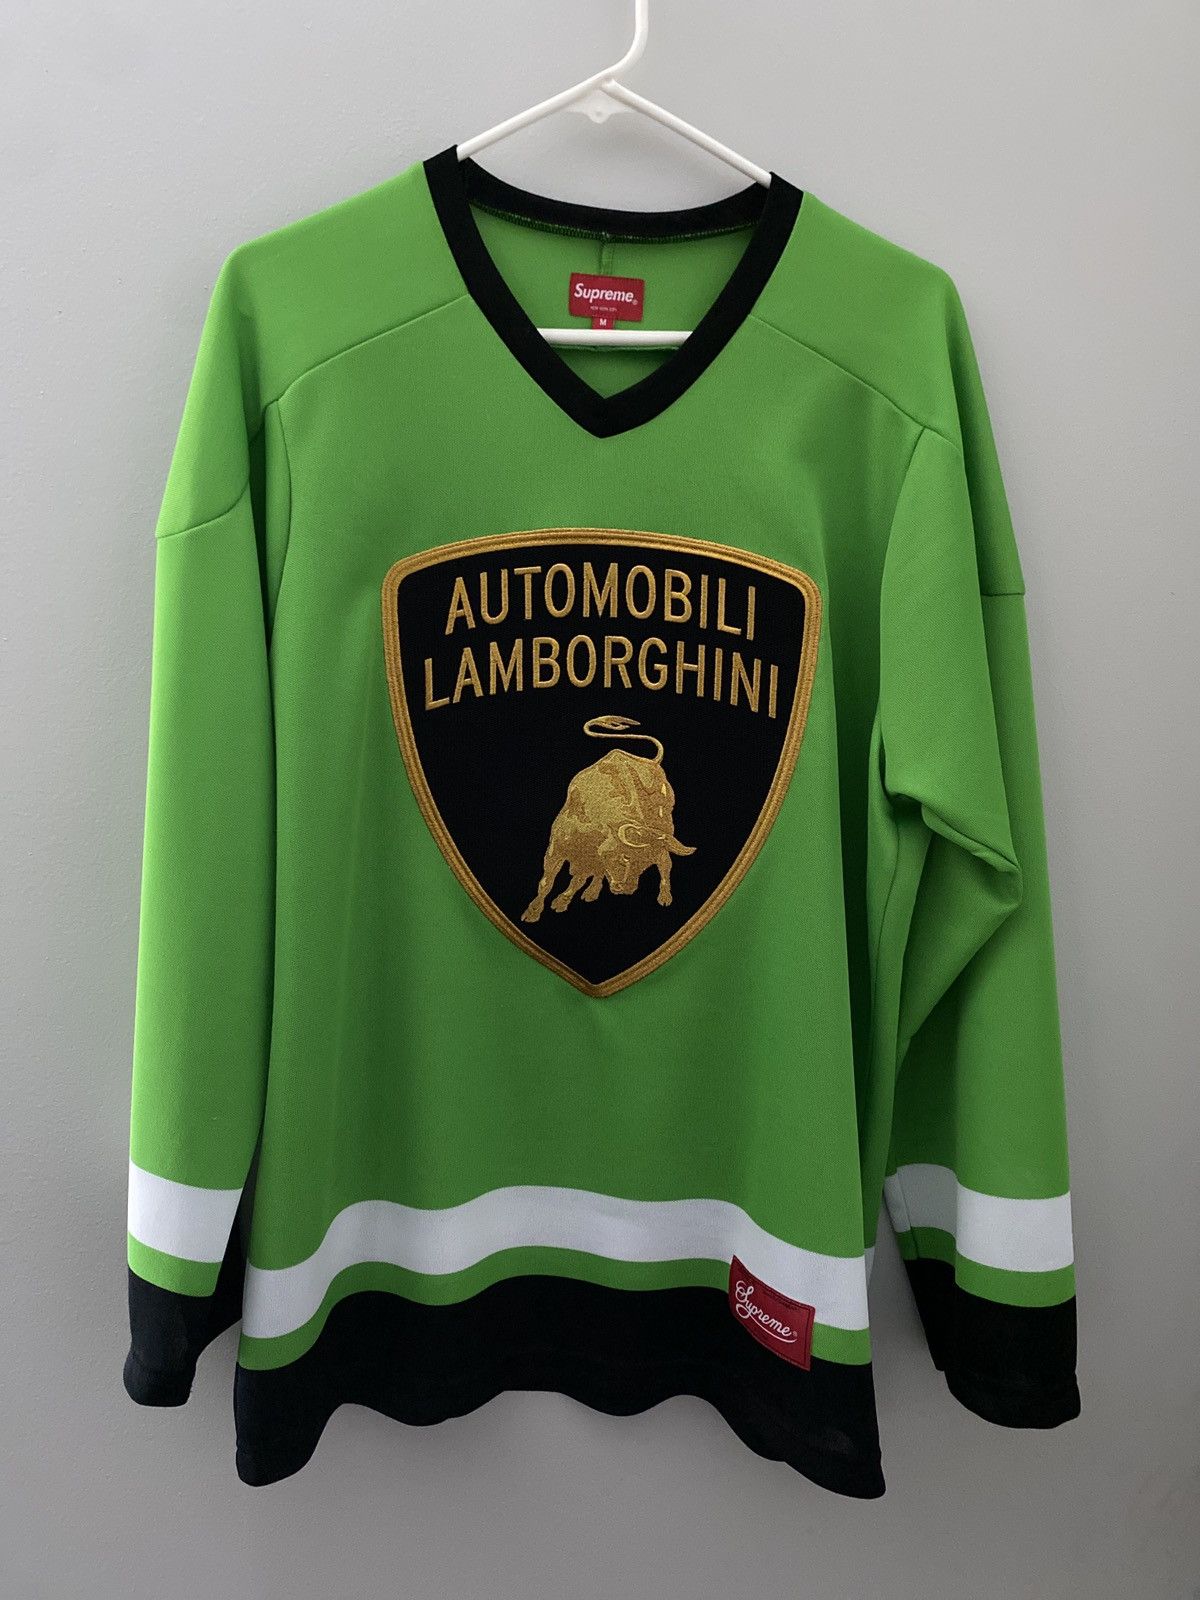 Supreme Green Supreme x Lamborghini Hockey Jersey | Grailed